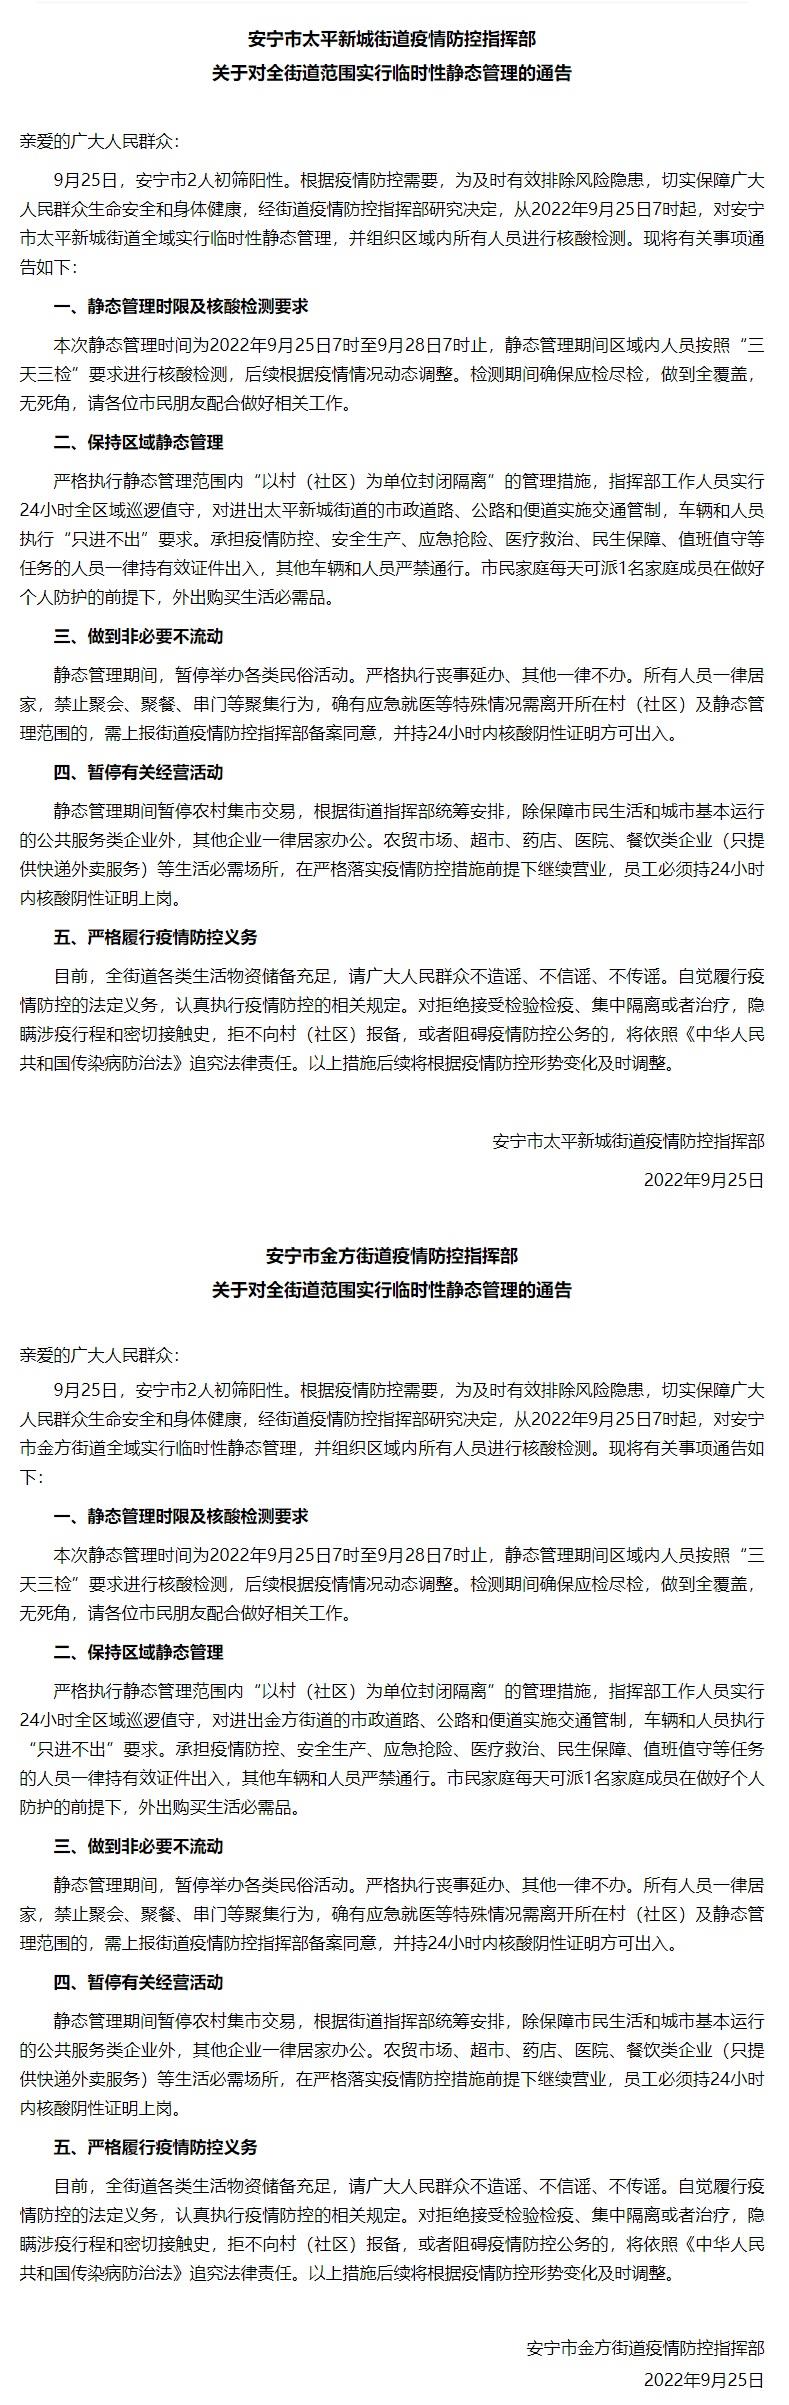 云南昆明安宁市两街道实行临时性静态管理措施